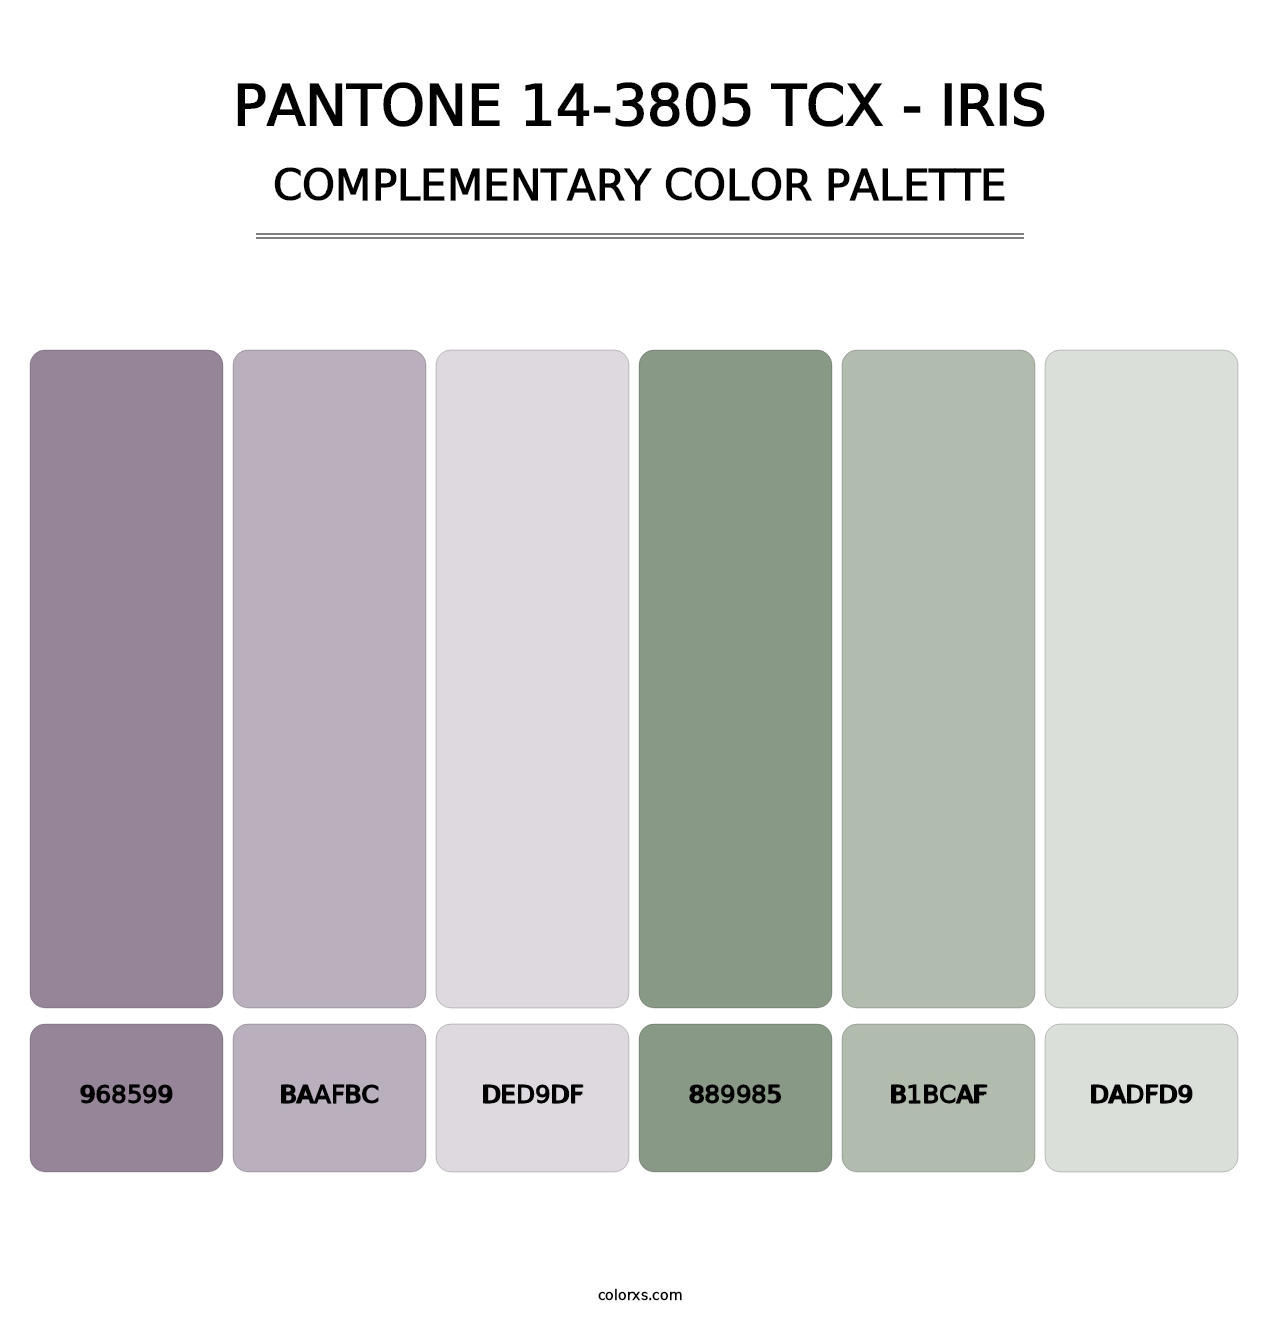 PANTONE 14-3805 TCX - Iris - Complementary Color Palette